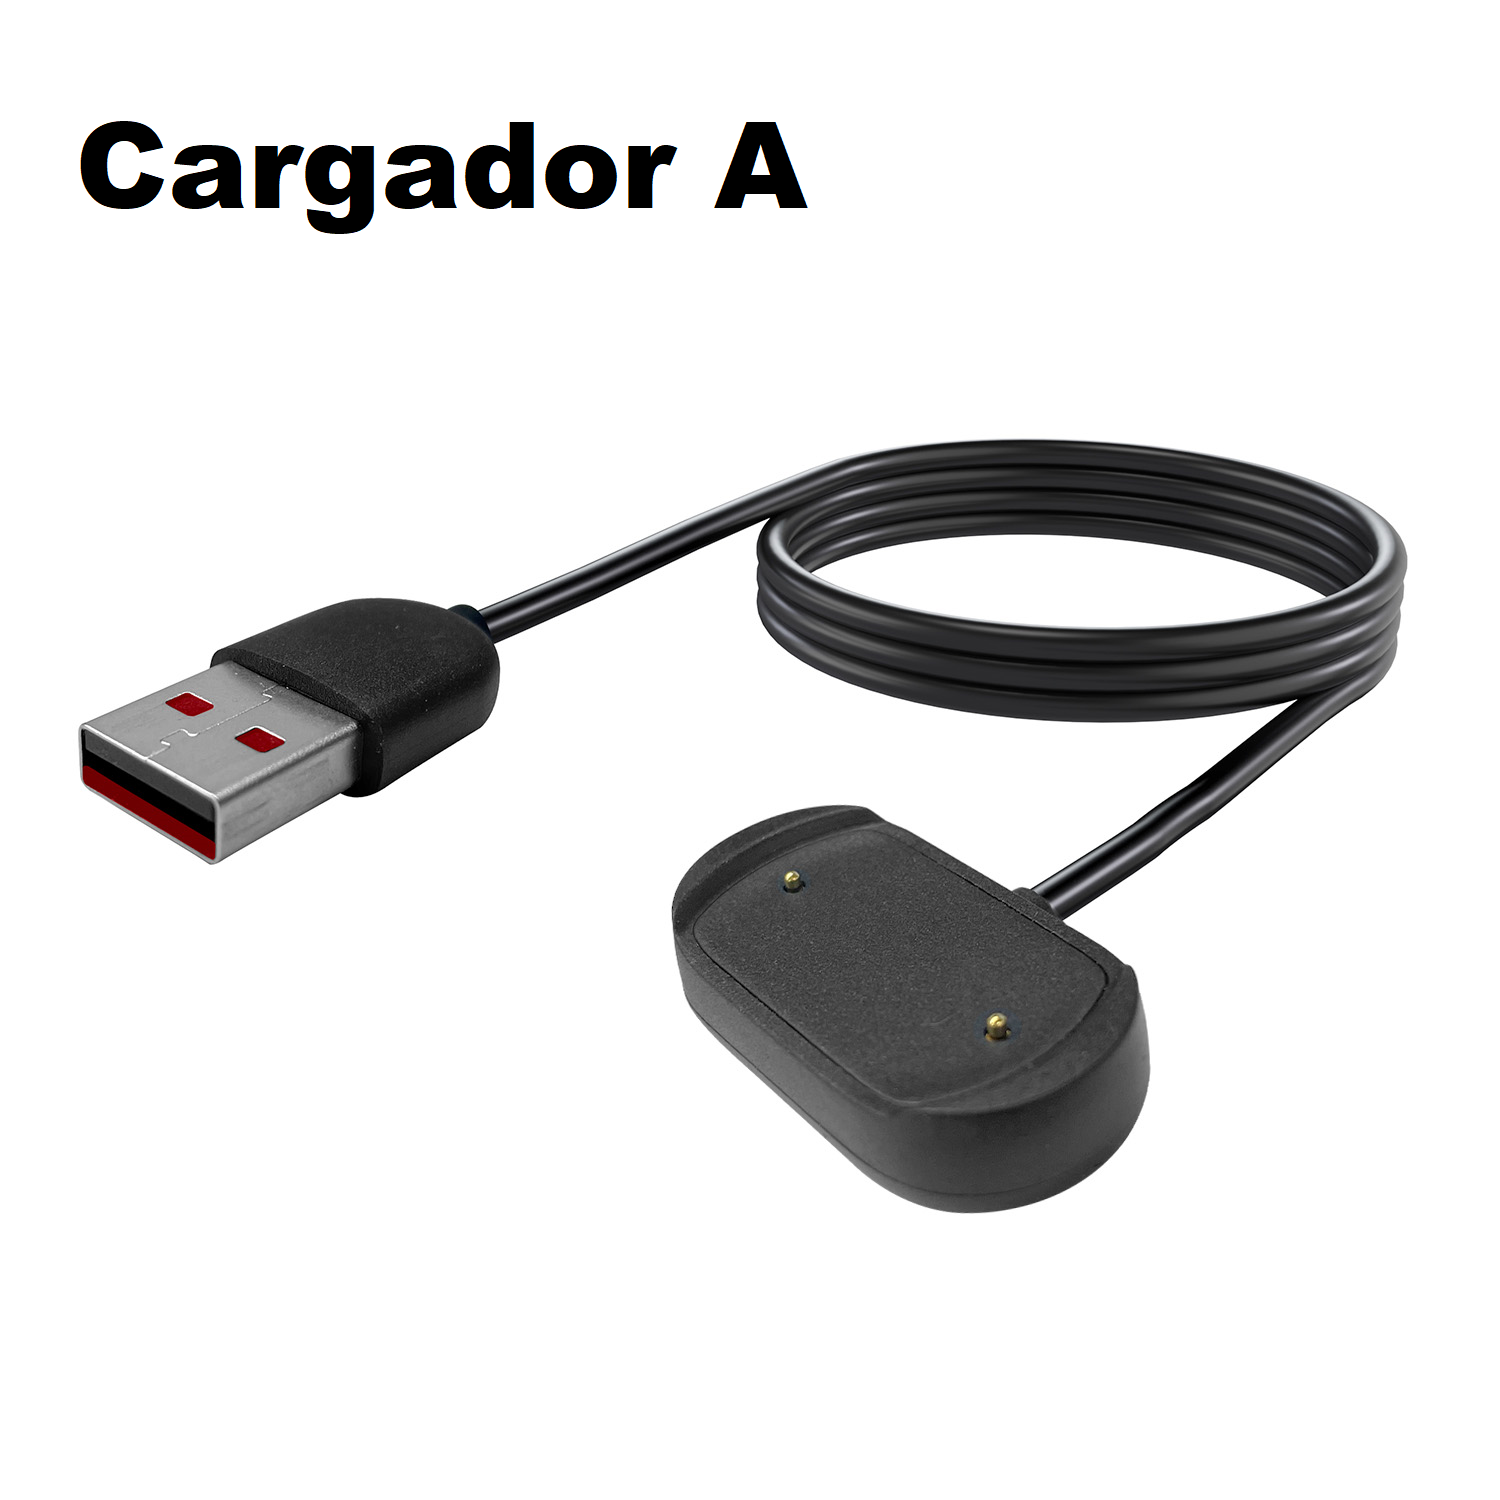 Cargador de repuesto compatible con Amazfit GTR GTS T-Rex (no compatible  con Amazfit GTR 2,3/GTS 2,3/T-Rex Pro), cable de carga USB KELIFANG  compatible con Amazfit GTR, GTS, T-Rex Smartwatch Accesorios :  